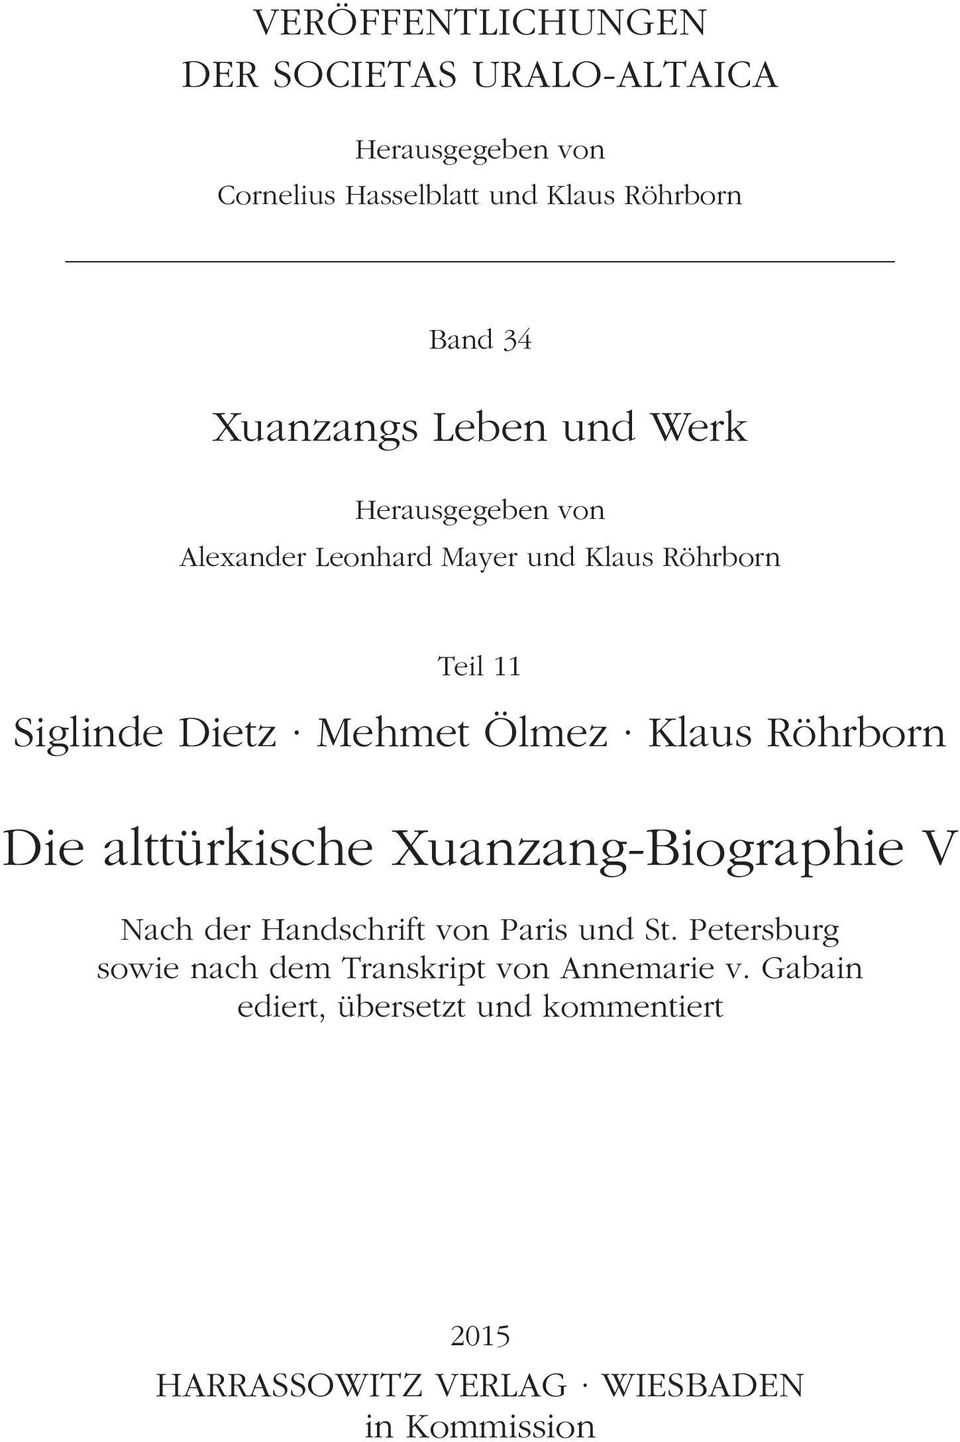 Xuanzang-Biographie V Nach der Handschrift von Paris und St. Petersburg Nach sowie der nach Handschrift dem Transkript von von Paris Annemarie und St. Petersburg v.